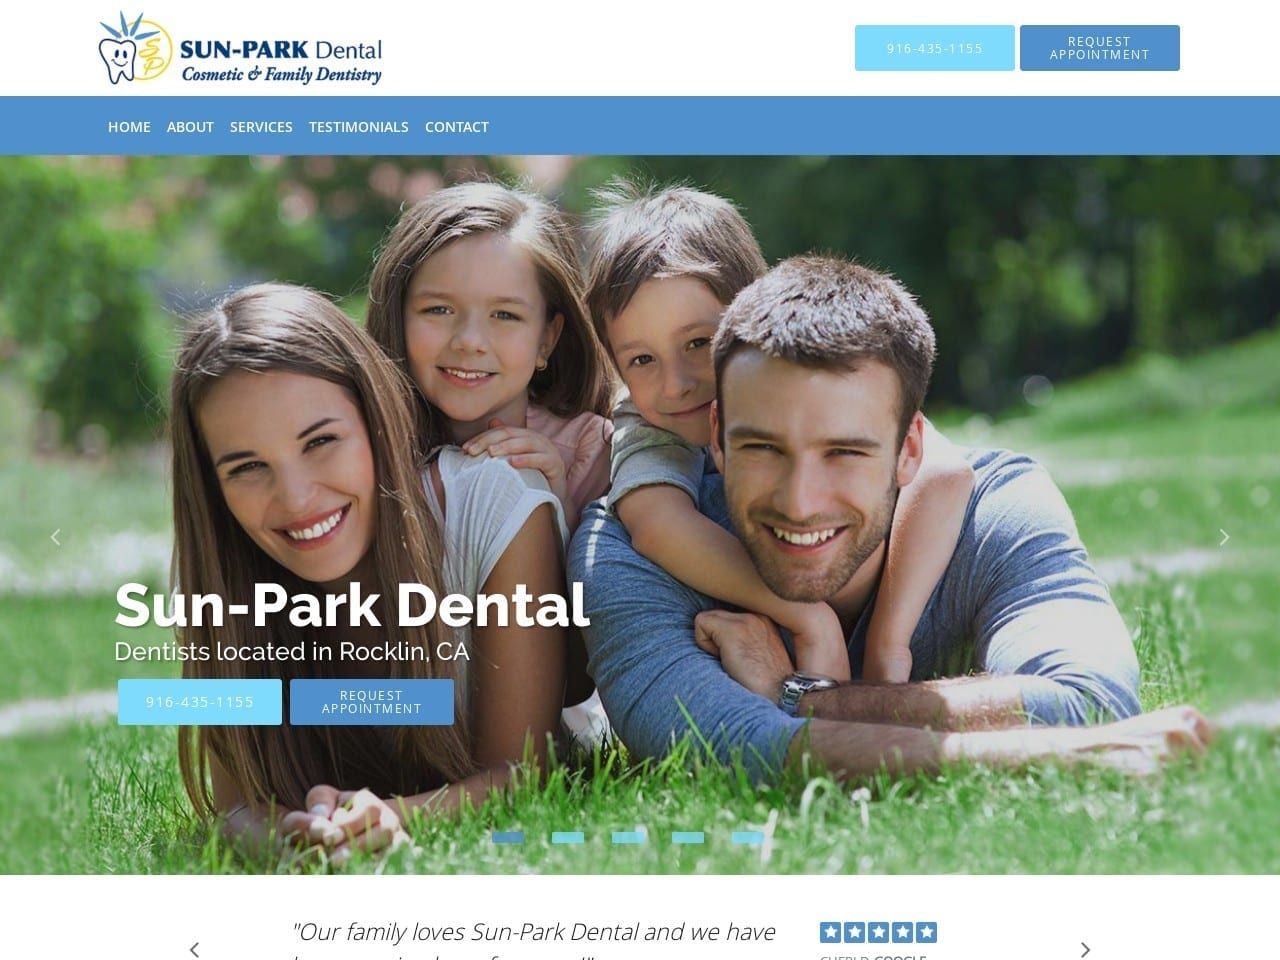 Sunpark Dental Website Screenshot from sunparkdental.net